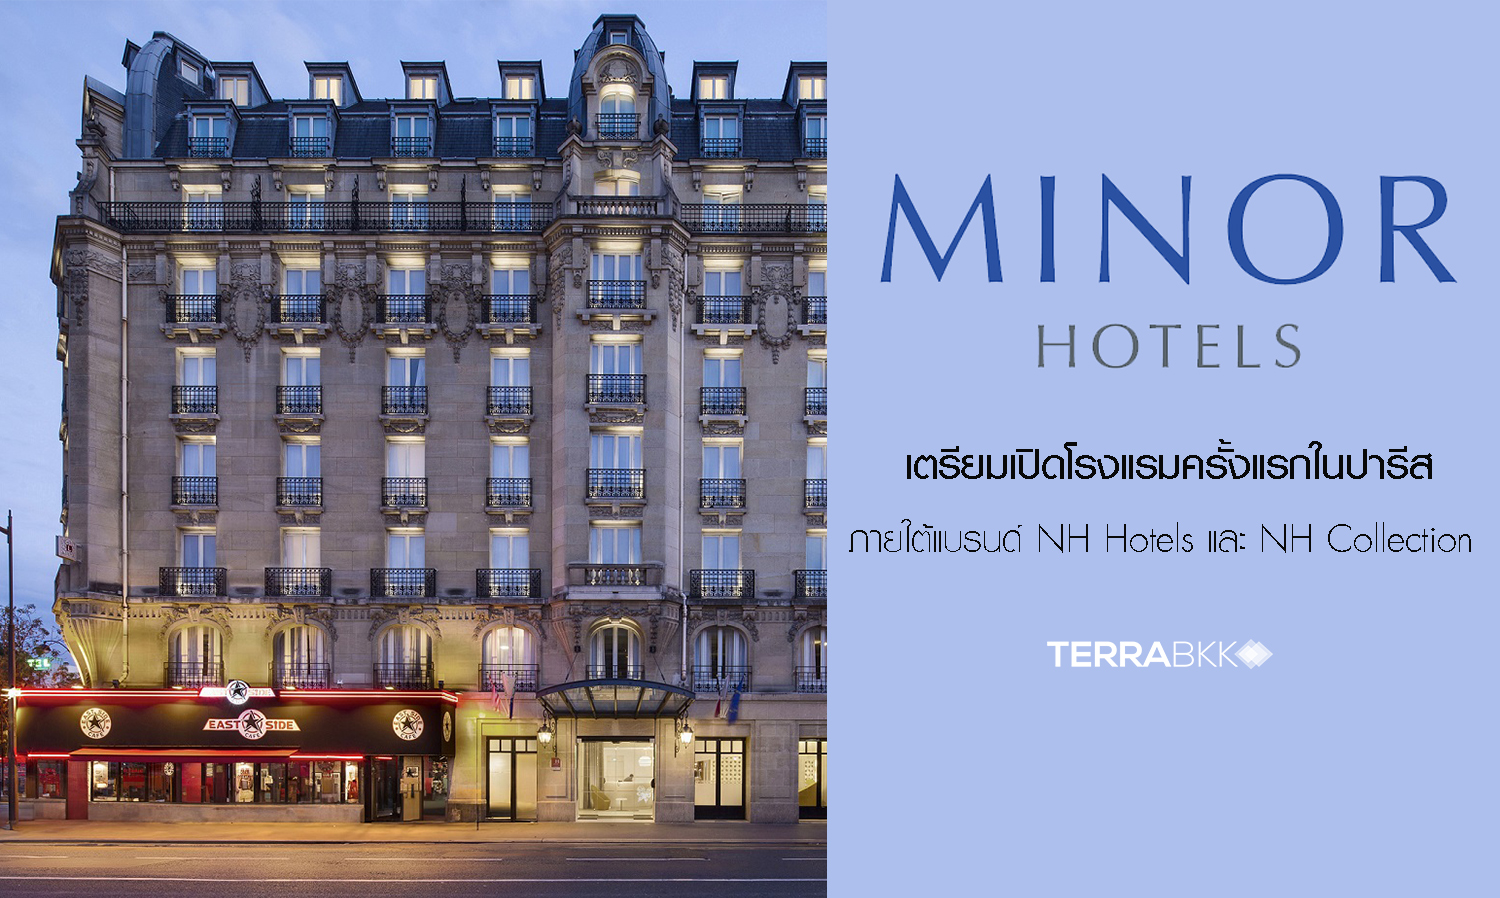 กลุ่มไมเนอร์ โฮเทลส์ เตรียมเปิดโรงแรมครั้งแรกในปารีส ภายใต้แบรนด์ NH Hotels และ NH Collection 3 แห่ง